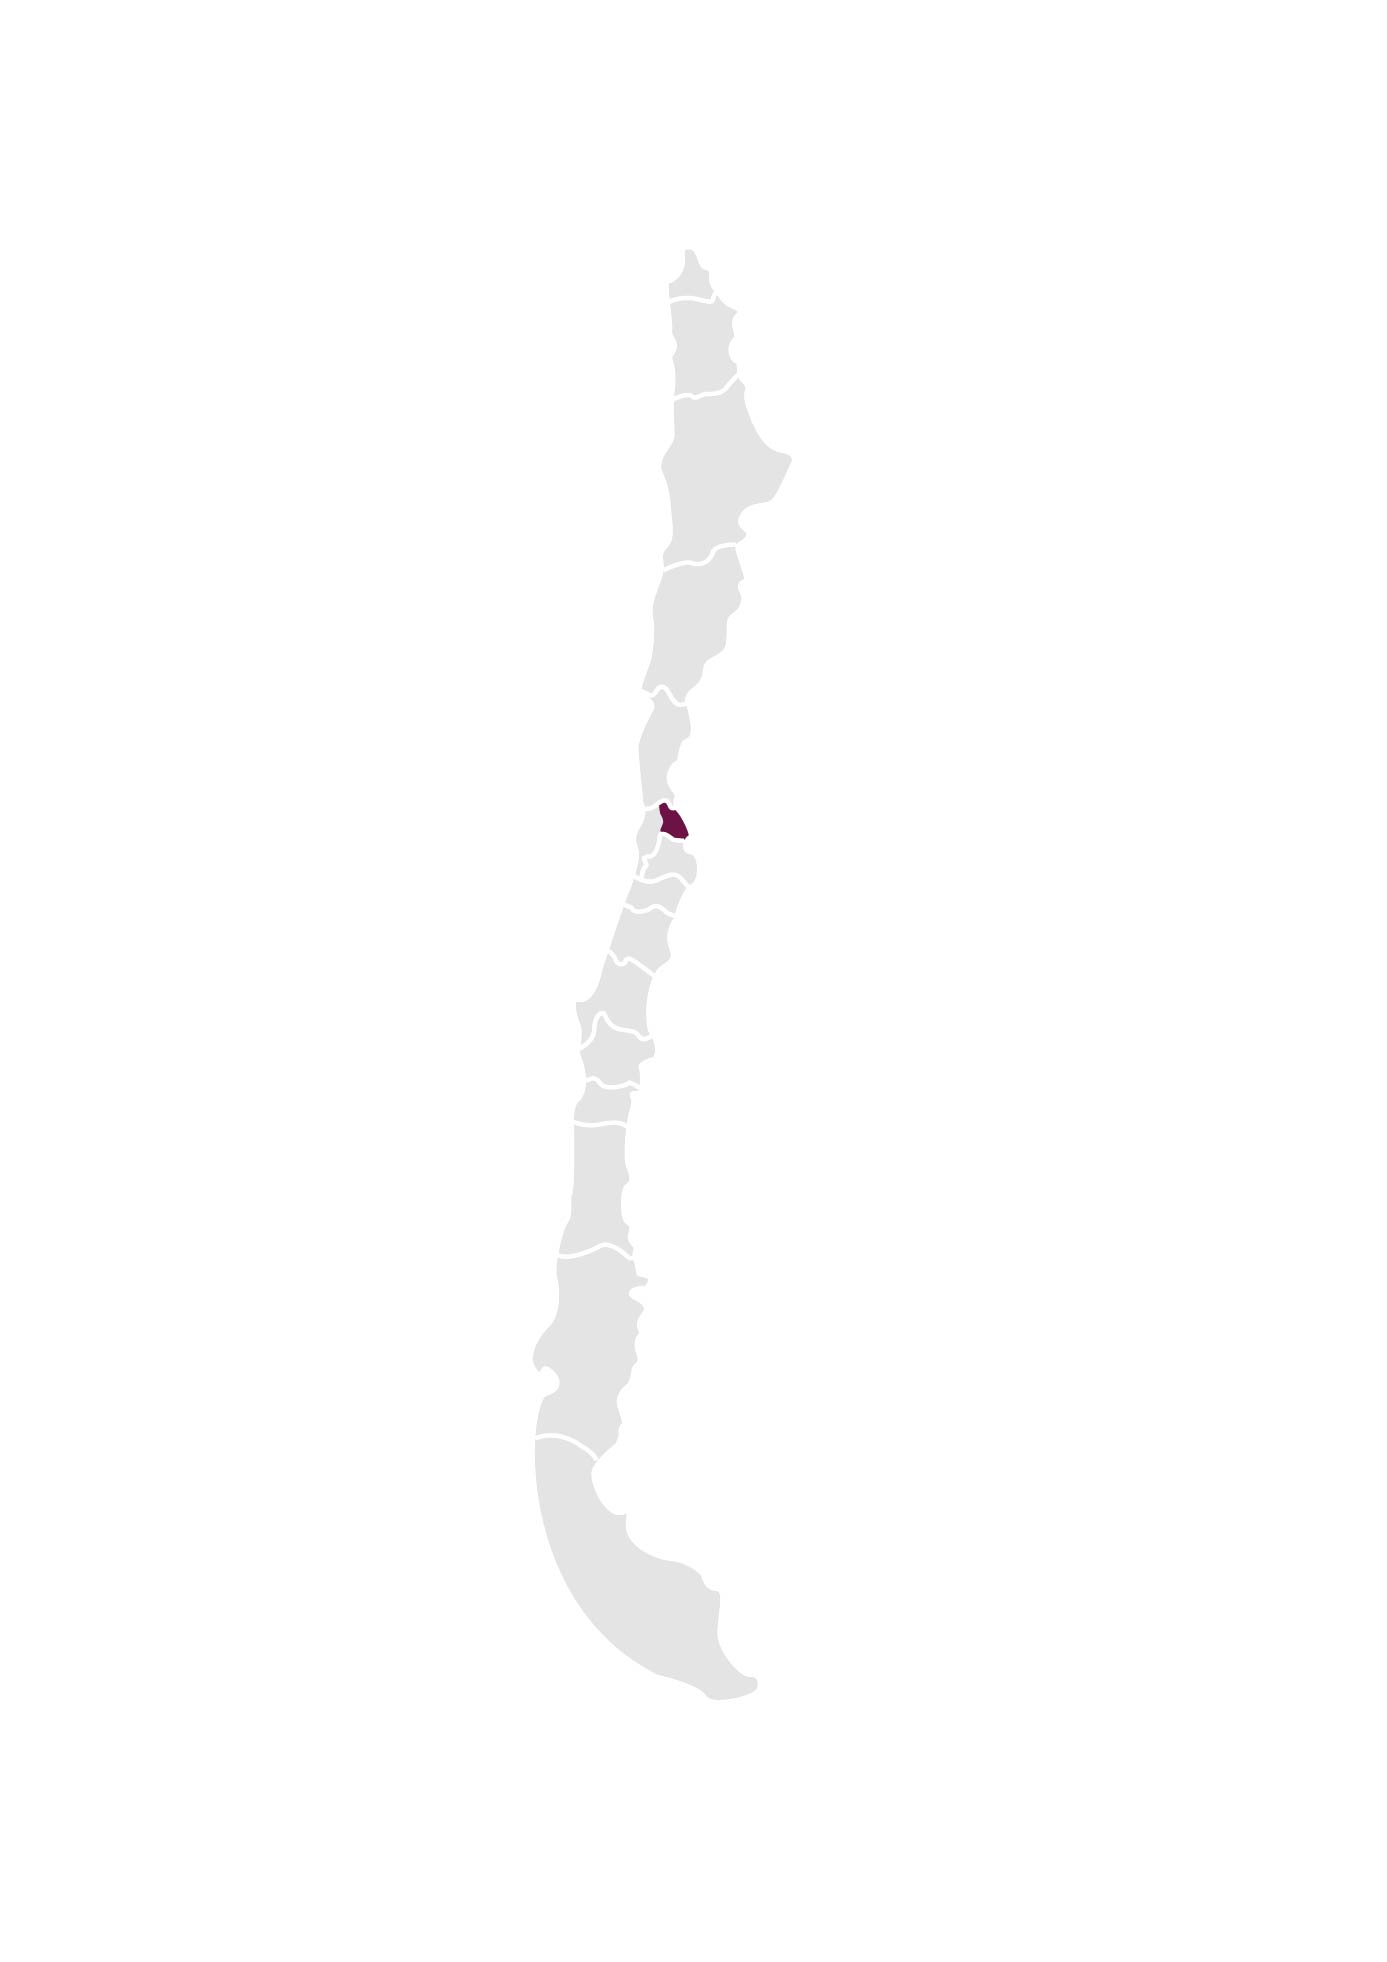 Chile_regions_Valle del Aconcagua